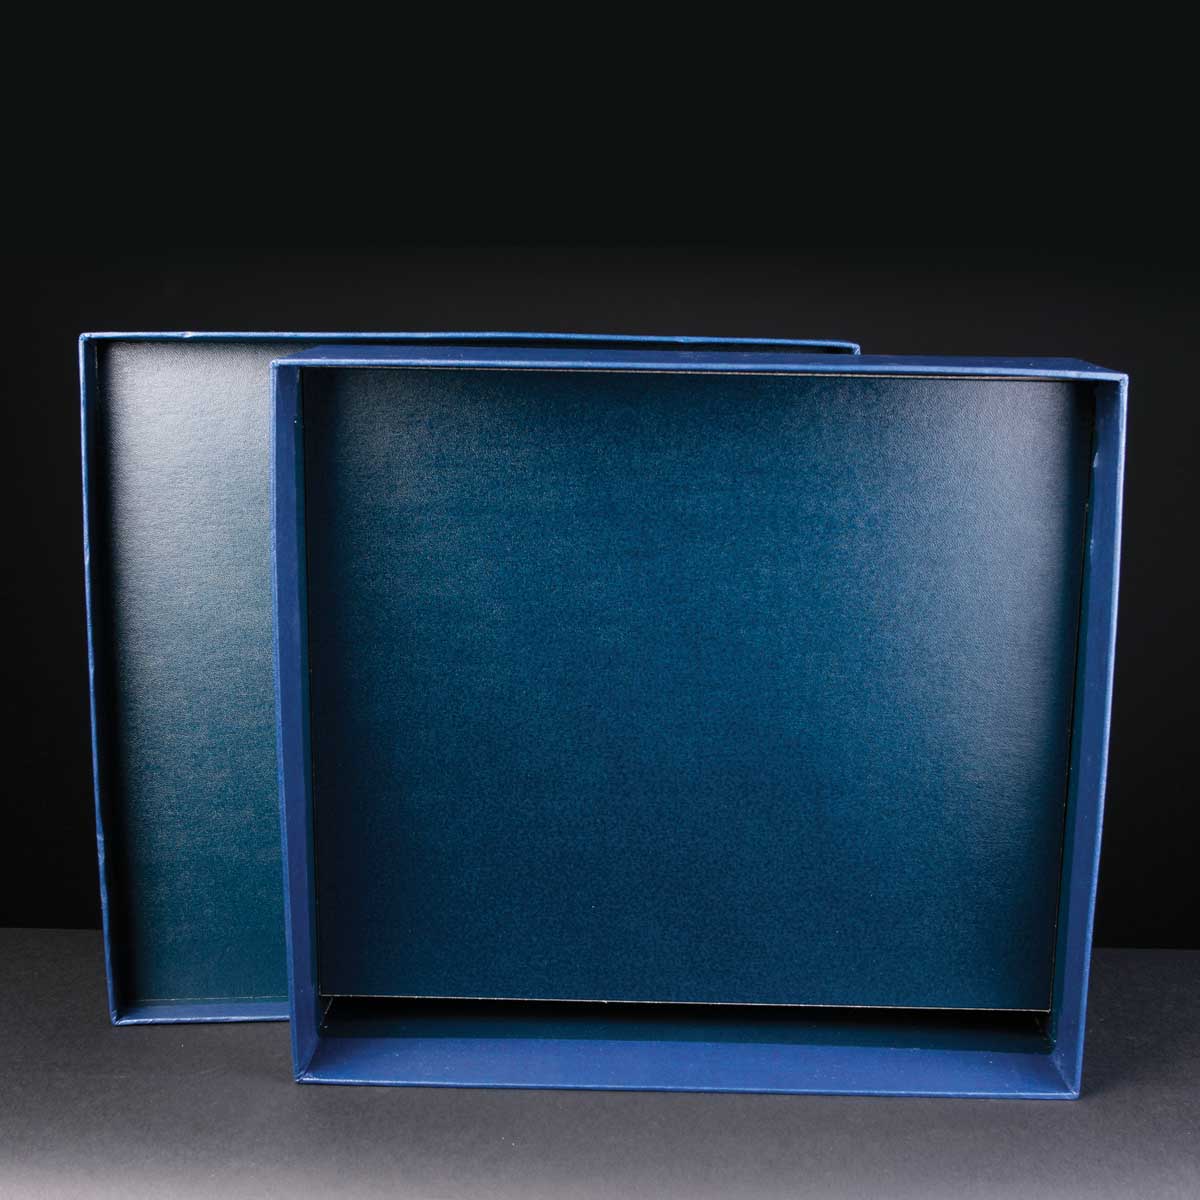 Award Box Landscape Platform 12.7x11.75x4 inches, Single, White Sleeve